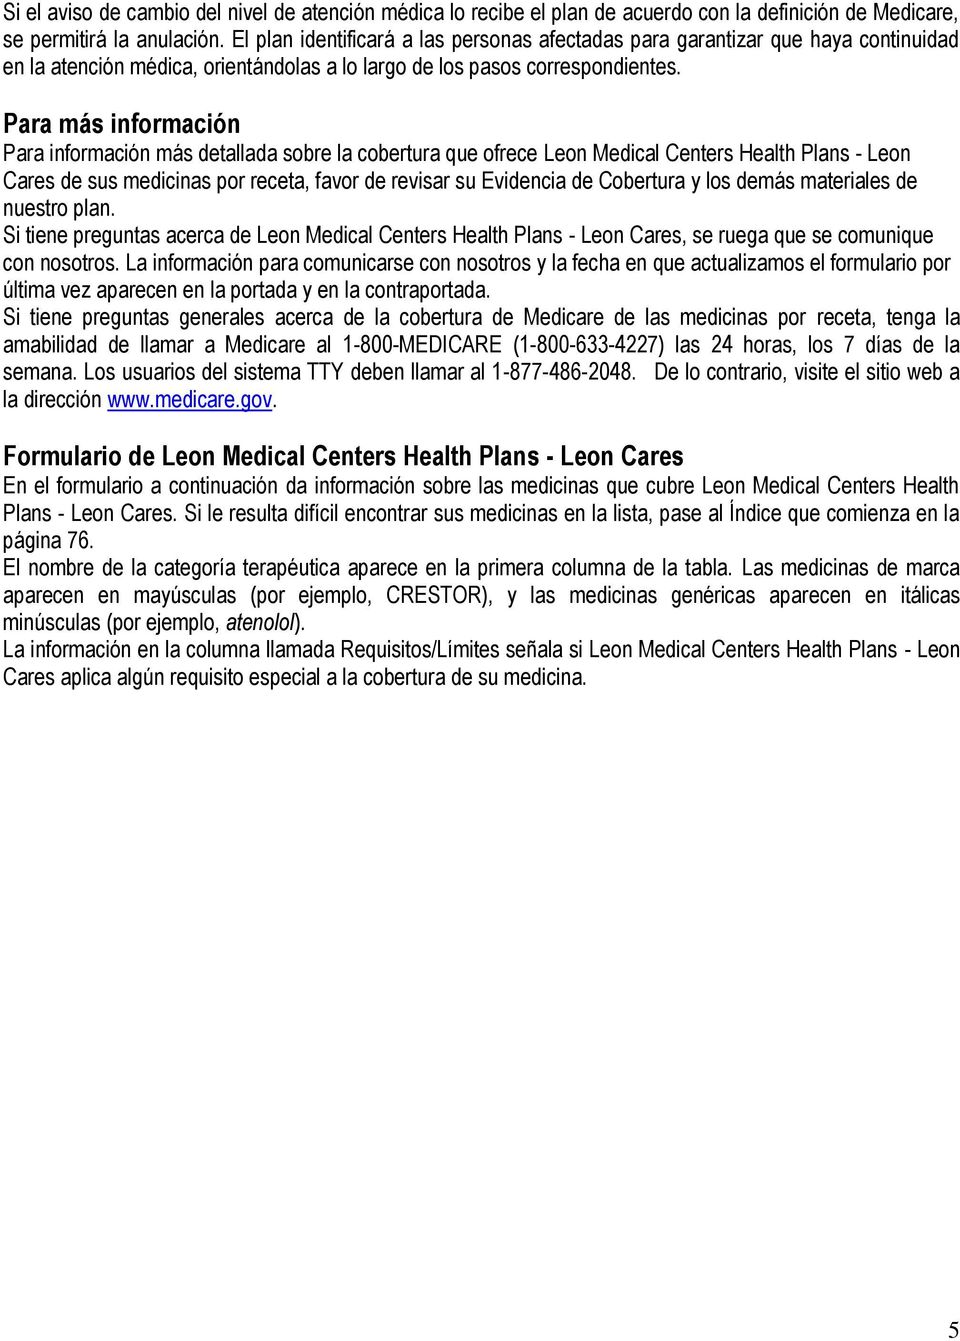 Para más información Para información más detallada sobre la cobertura que ofrece Leon Medical Centers Health Plans - Leon Cares de sus medicinas por receta, favor de revisar su Evidencia de